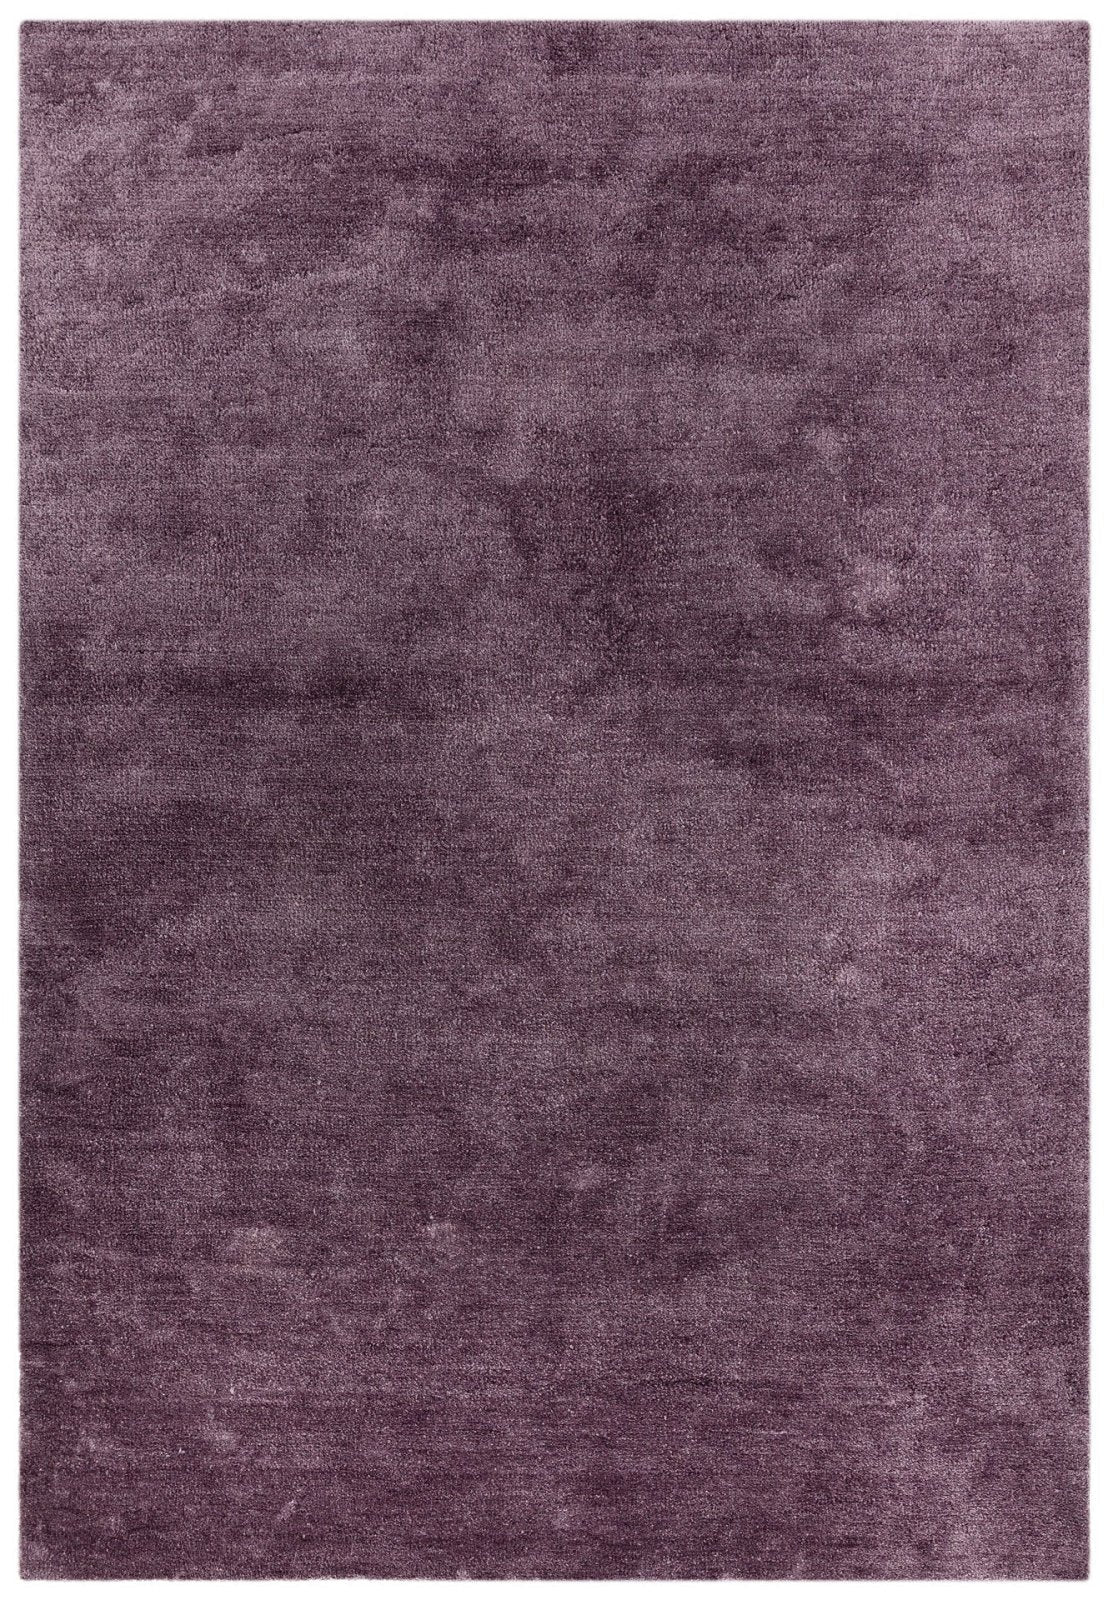 Plain Purple Rugs